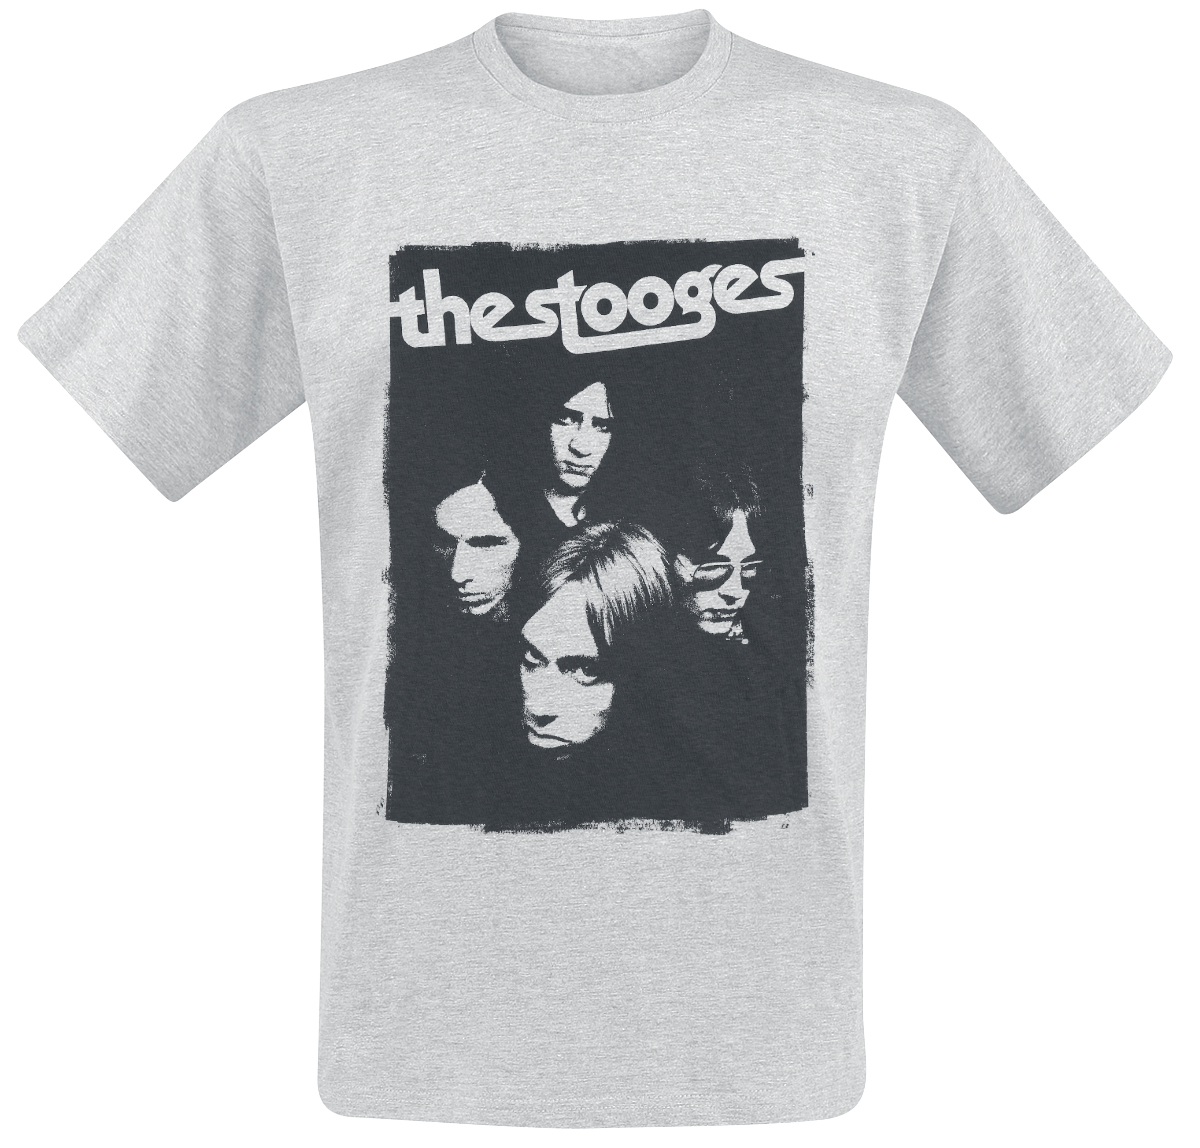 Iggy Pop - The Stooges - T-Shirt - mottled light grey image